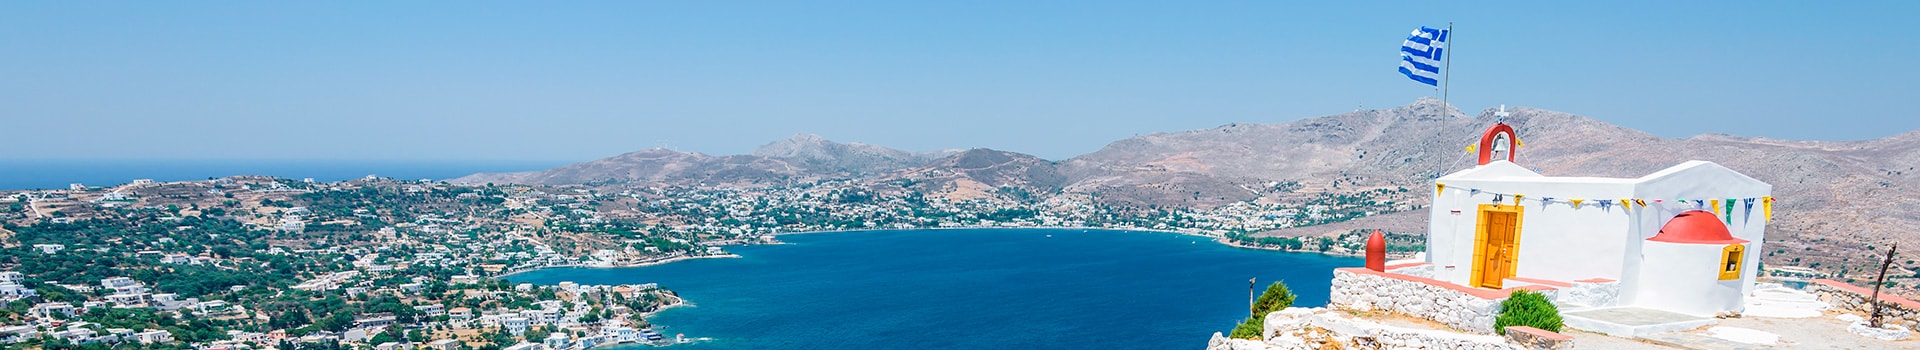 Billetes de Barco y Ferry en Isla de Leros